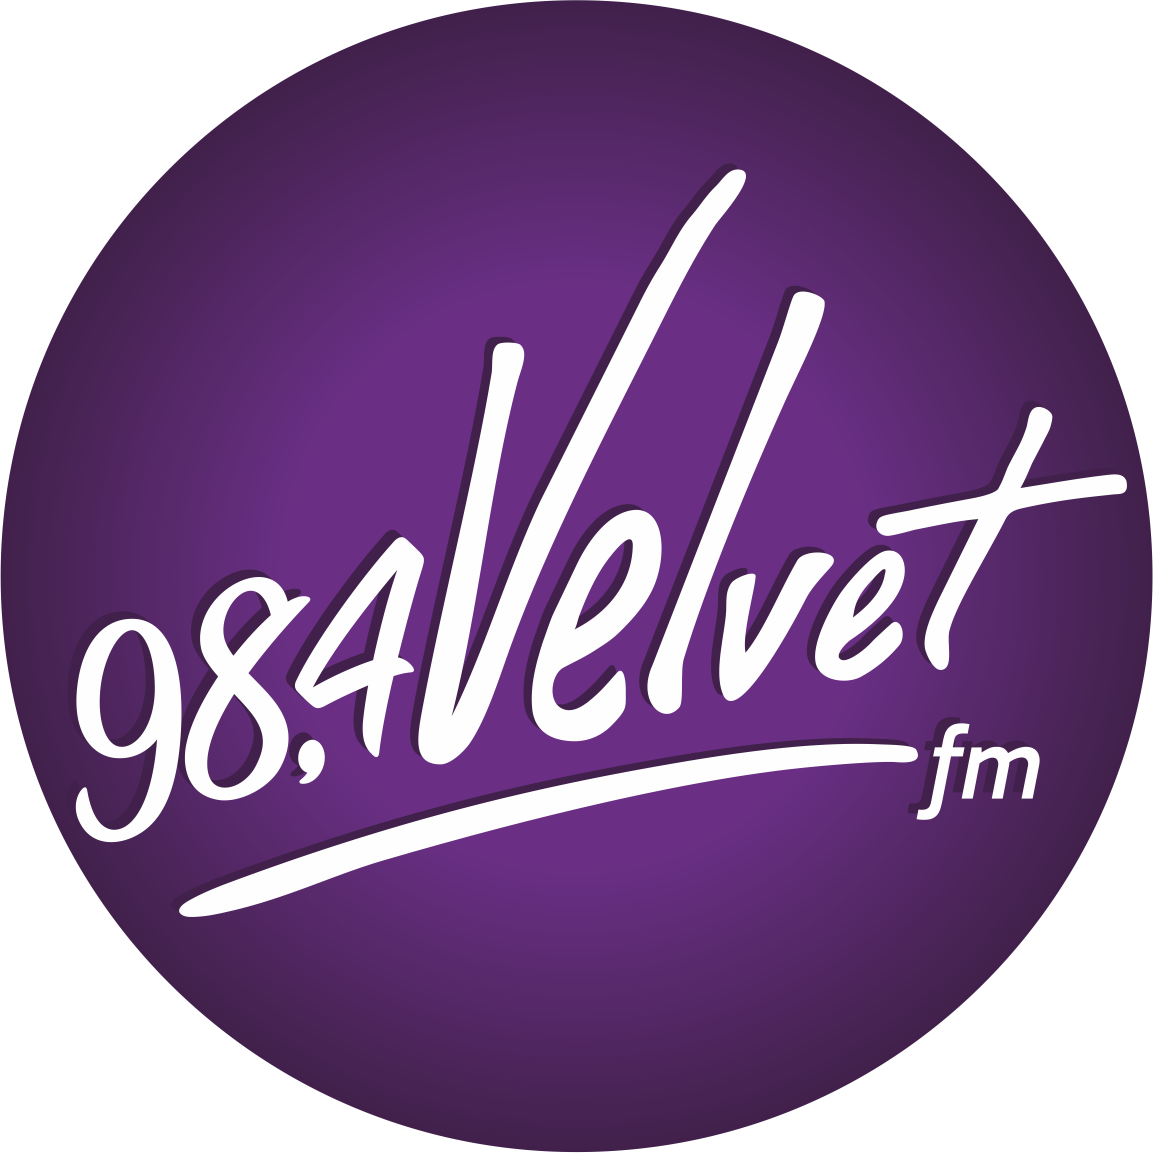 Velvet logo. Радио 106.4 фм